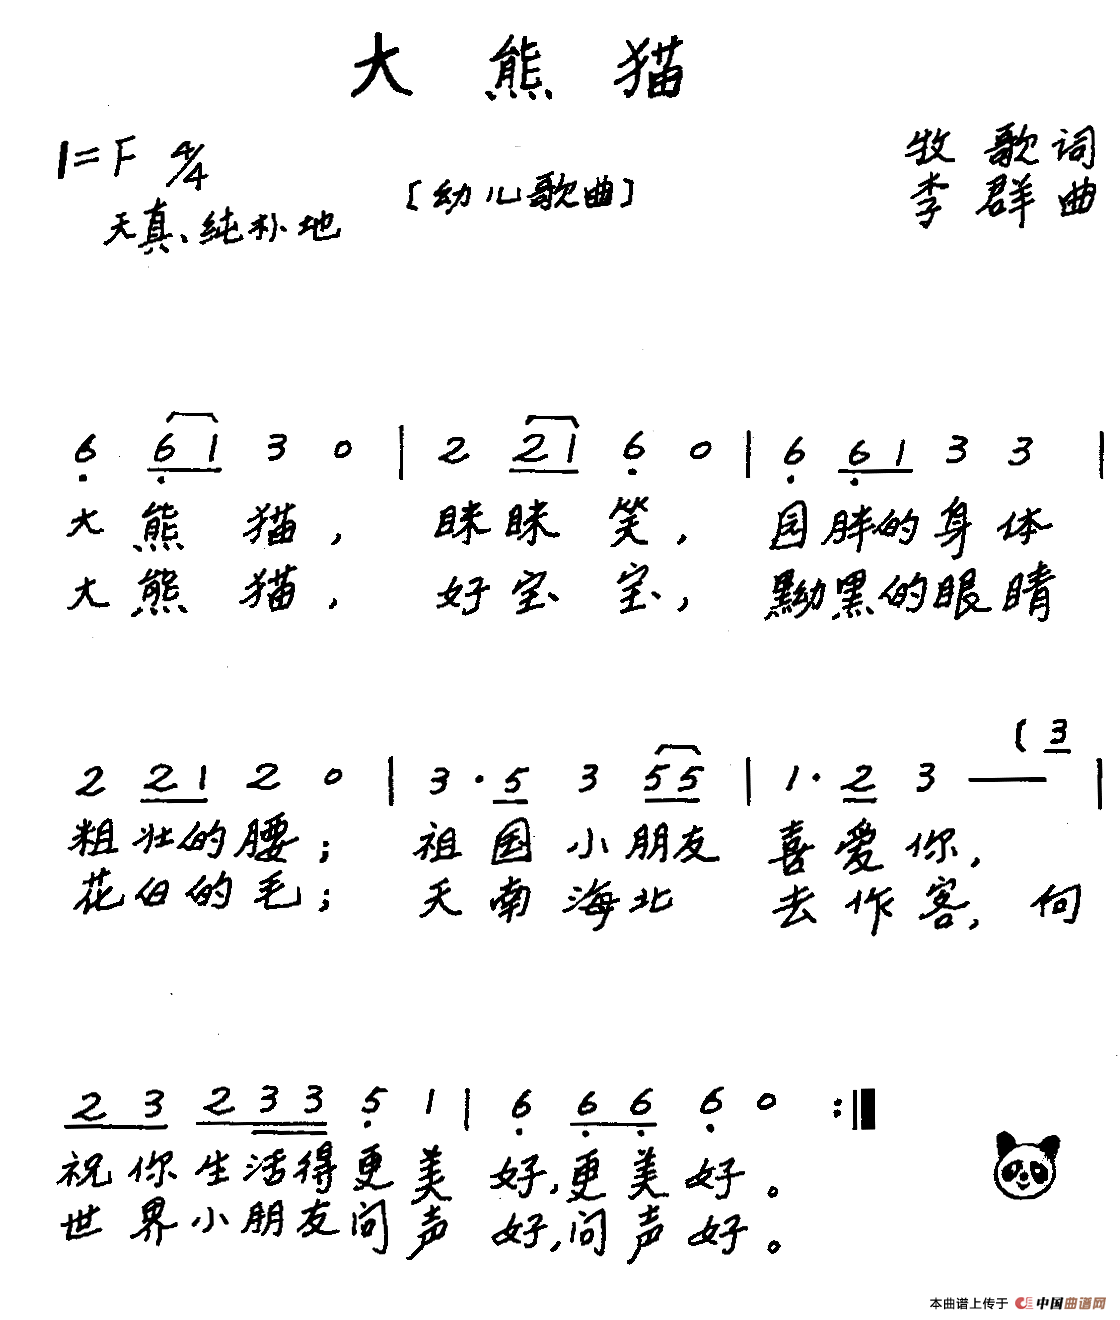 大熊猫（牧歌词 李群曲、儿歌）(1)_原文件名：11.gif